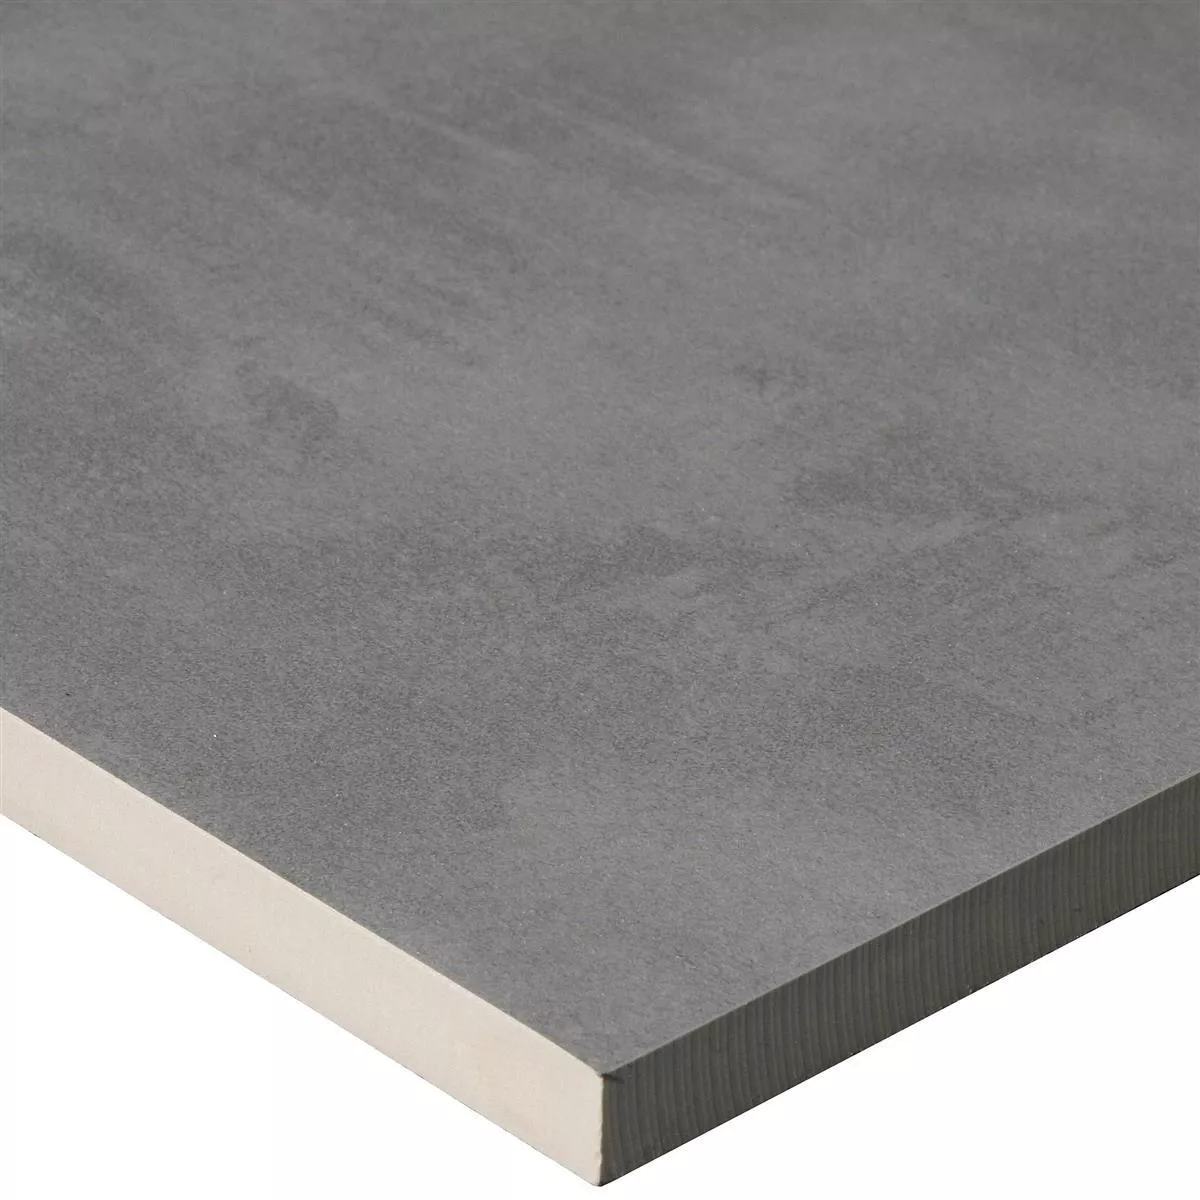 Muster Terrassenplatten Zeus Betonoptik Grey 30x60cm